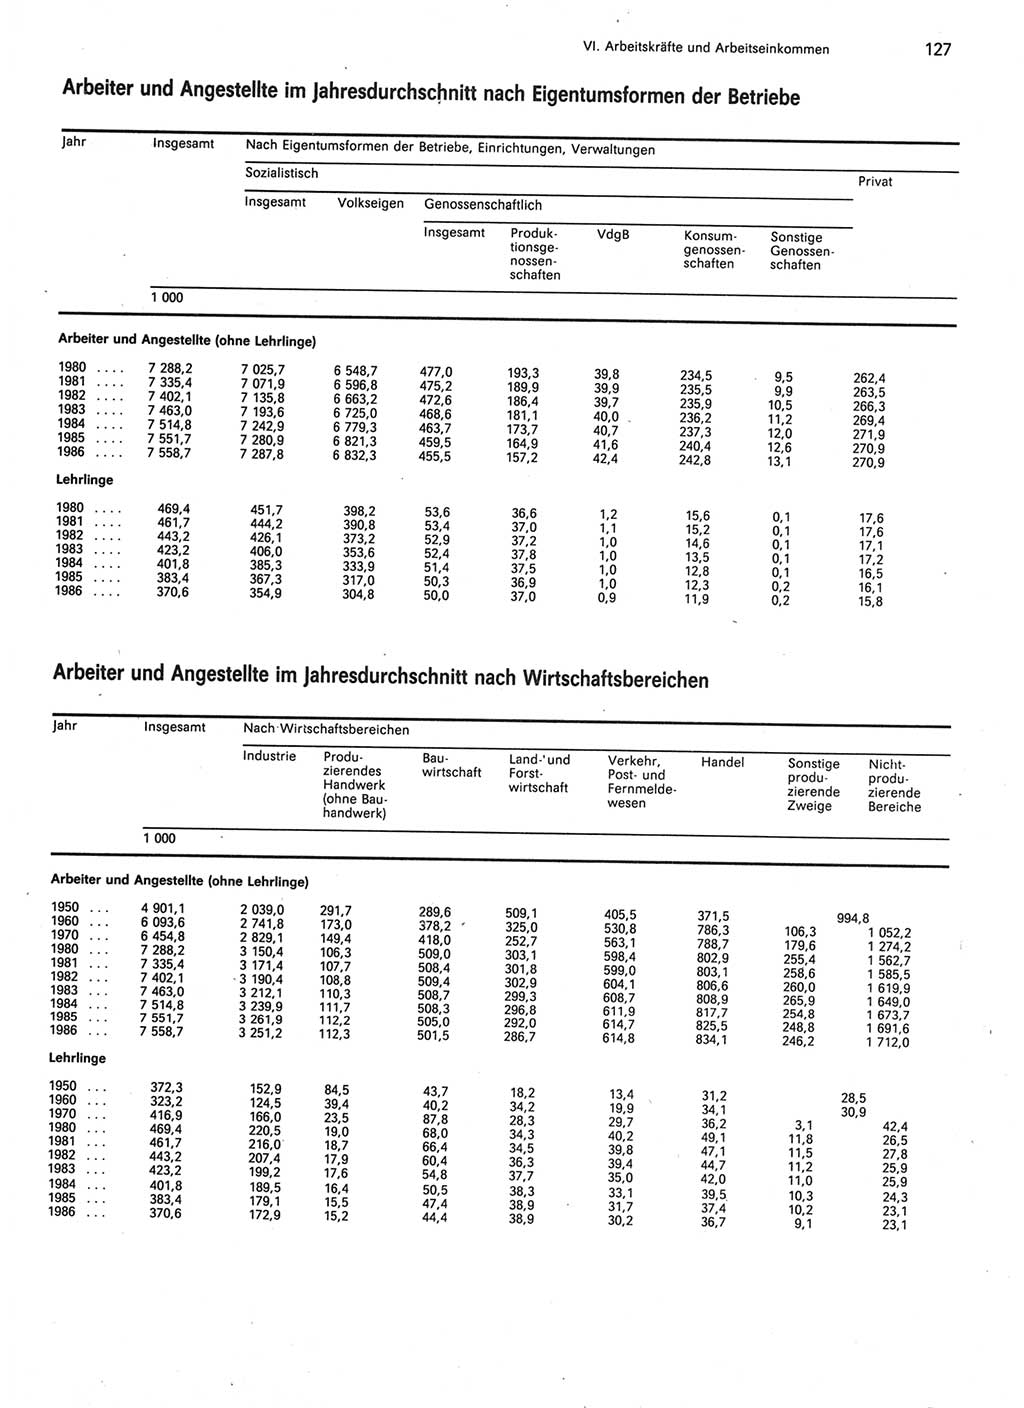 Statistisches Jahrbuch der Deutschen Demokratischen Republik (DDR) 1987, Seite 127 (Stat. Jb. DDR 1987, S. 127)